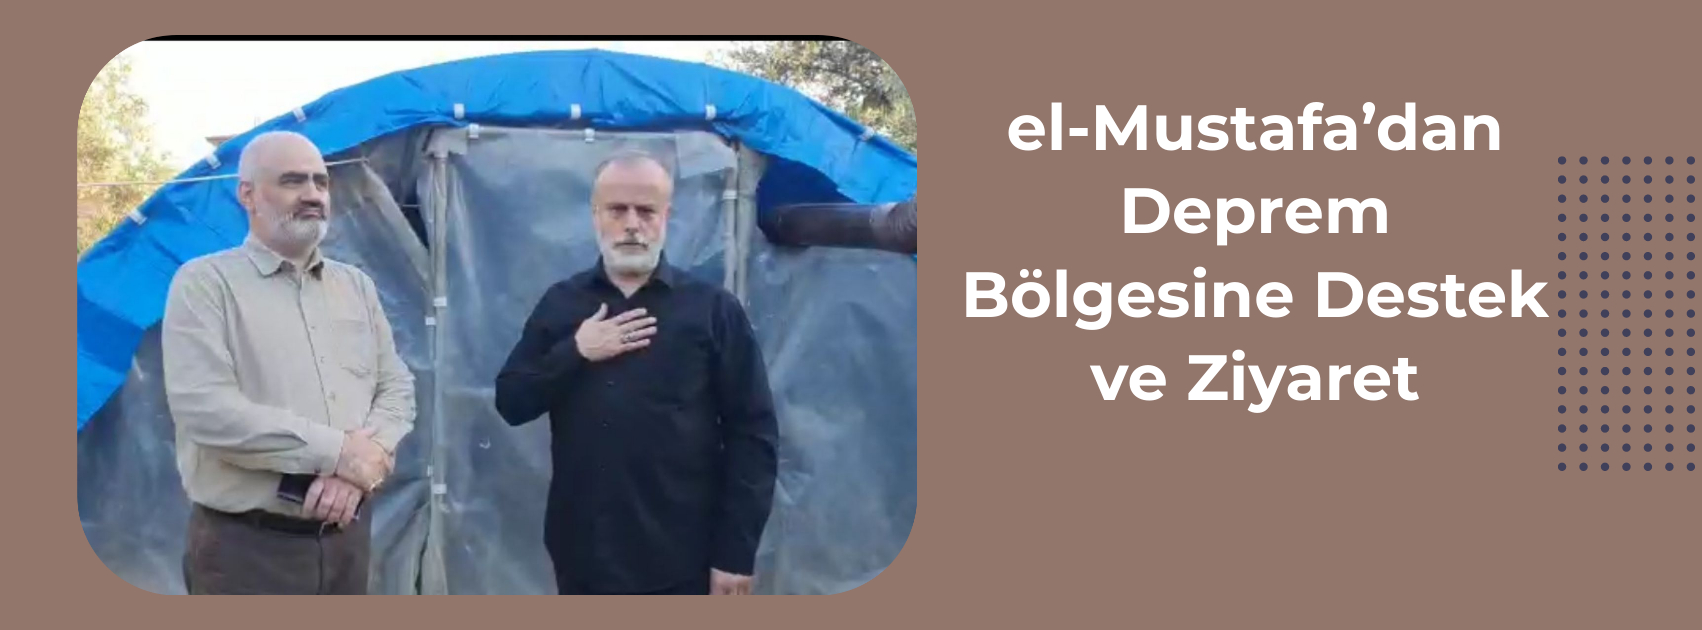 el-Mustafa'dan Deprem Bölgesine Destek ve Ziyaret